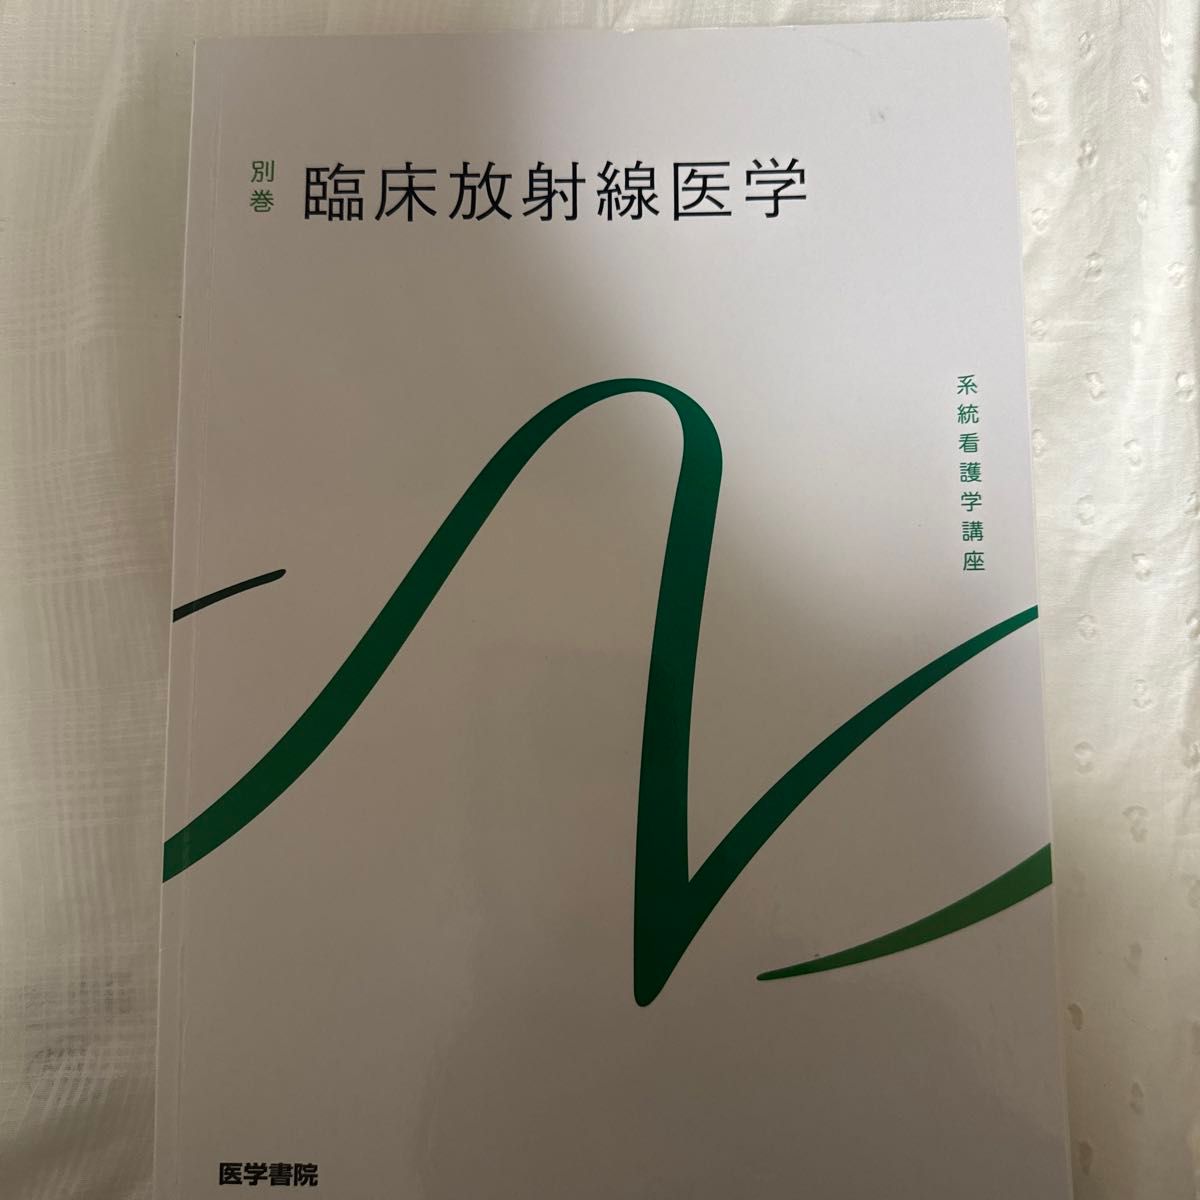 臨床放射線医学 第10版 (系統看護学講座 (別巻))